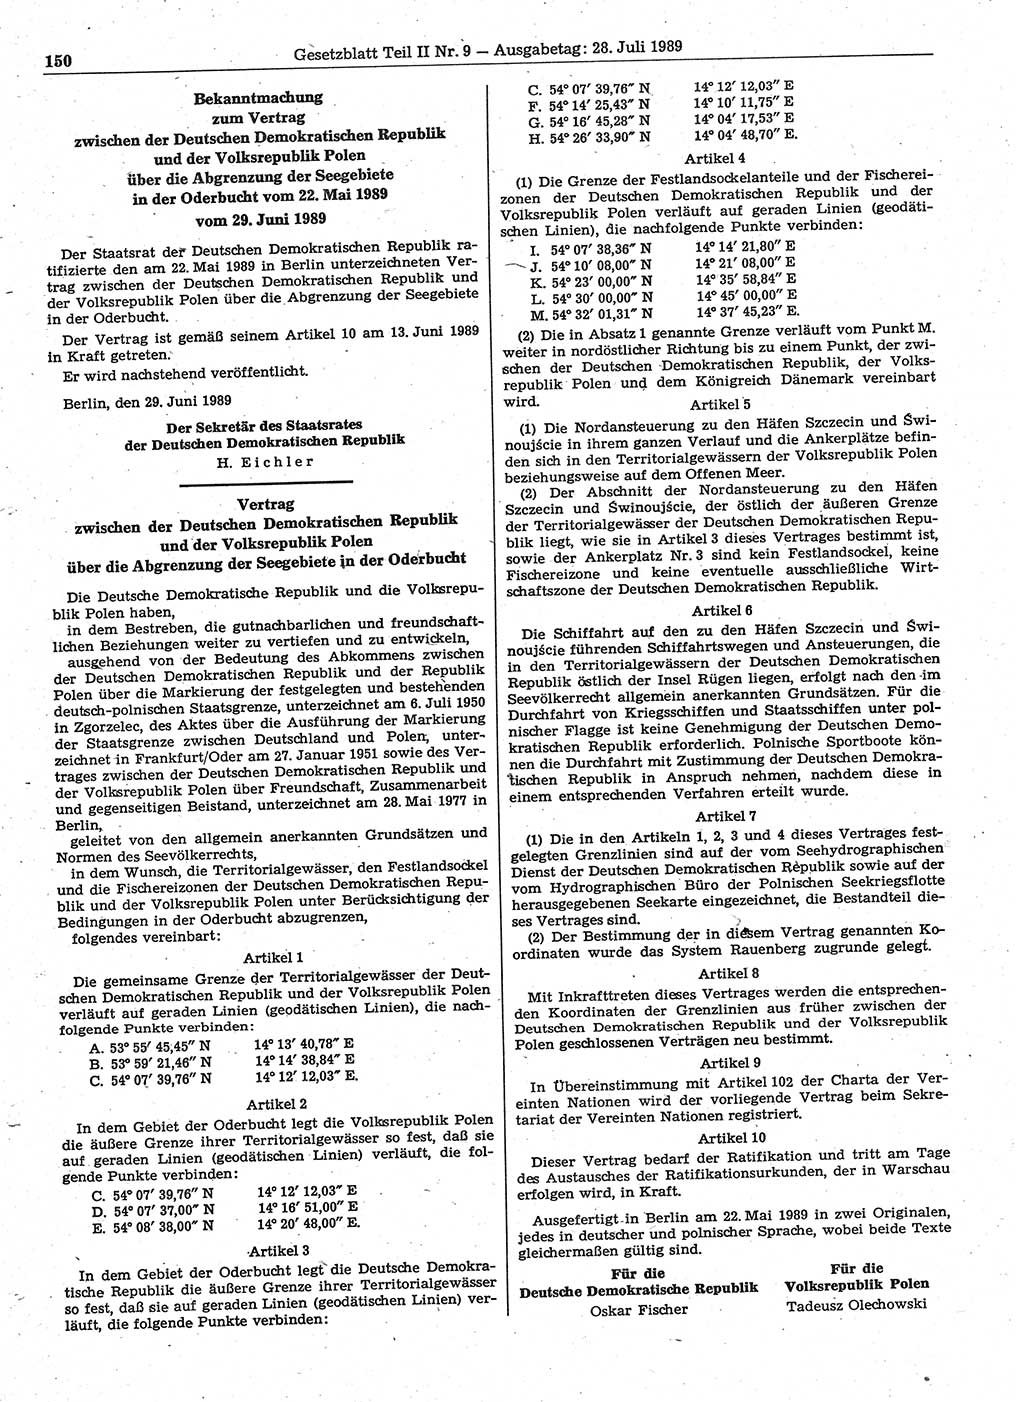 Gesetzblatt (GBl.) der Deutschen Demokratischen Republik (DDR) Teil ⅠⅠ 1989, Seite 150 (GBl. DDR ⅠⅠ 1989, S. 150)